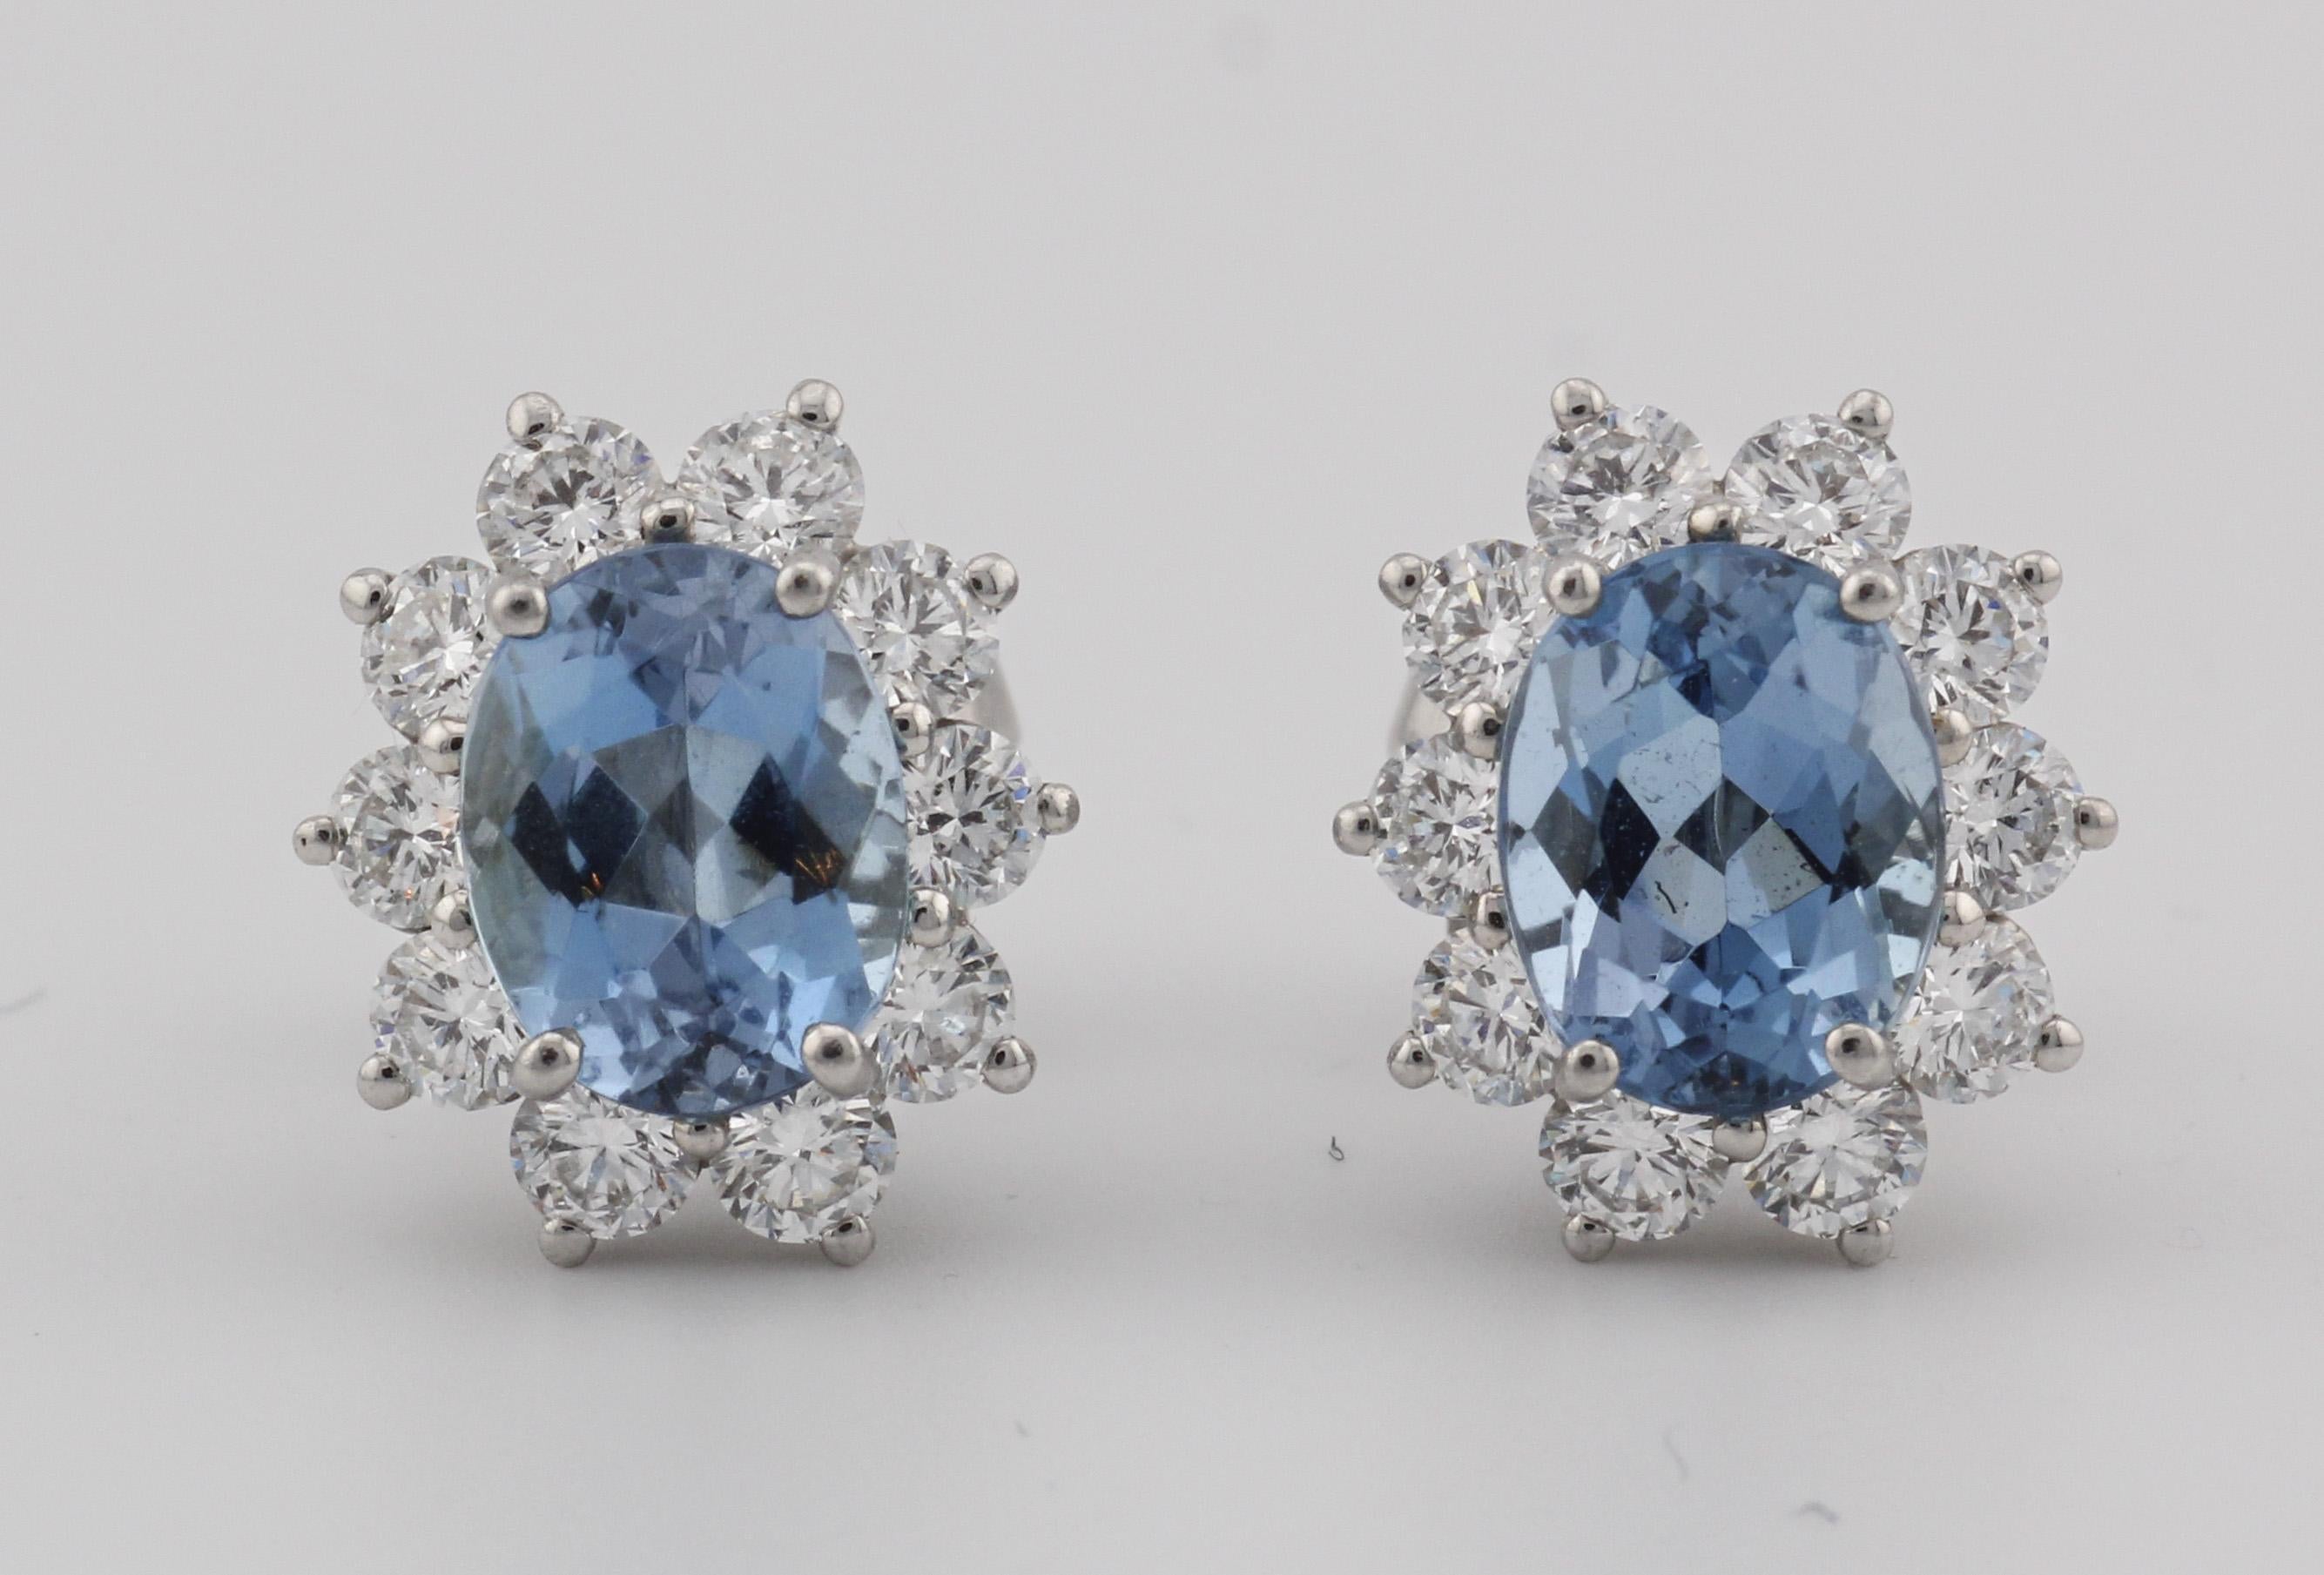 La collection Tiffany & Co. Les boucles d'oreilles aigue-marine diamant en platine incarnent l'élégance et le raffinement, mettant en valeur la beauté intemporelle des pierres précieuses aigue-marine et un savoir-faire artisanal exquis. Créées par